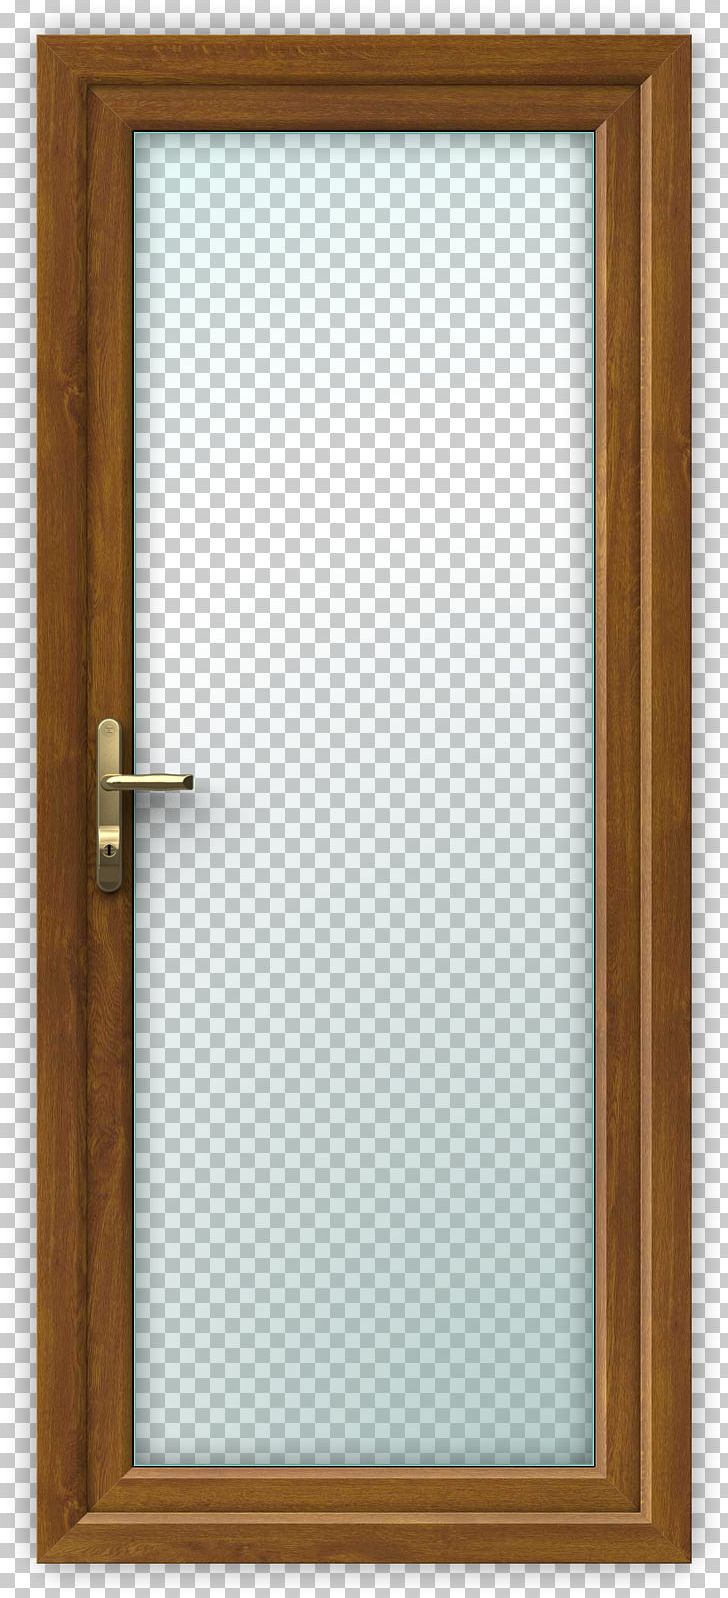 Window Mirror Frames Glass Bathroom PNG, Clipart, Bathroom, Casement, Door, Glass, Lixil Free PNG Download